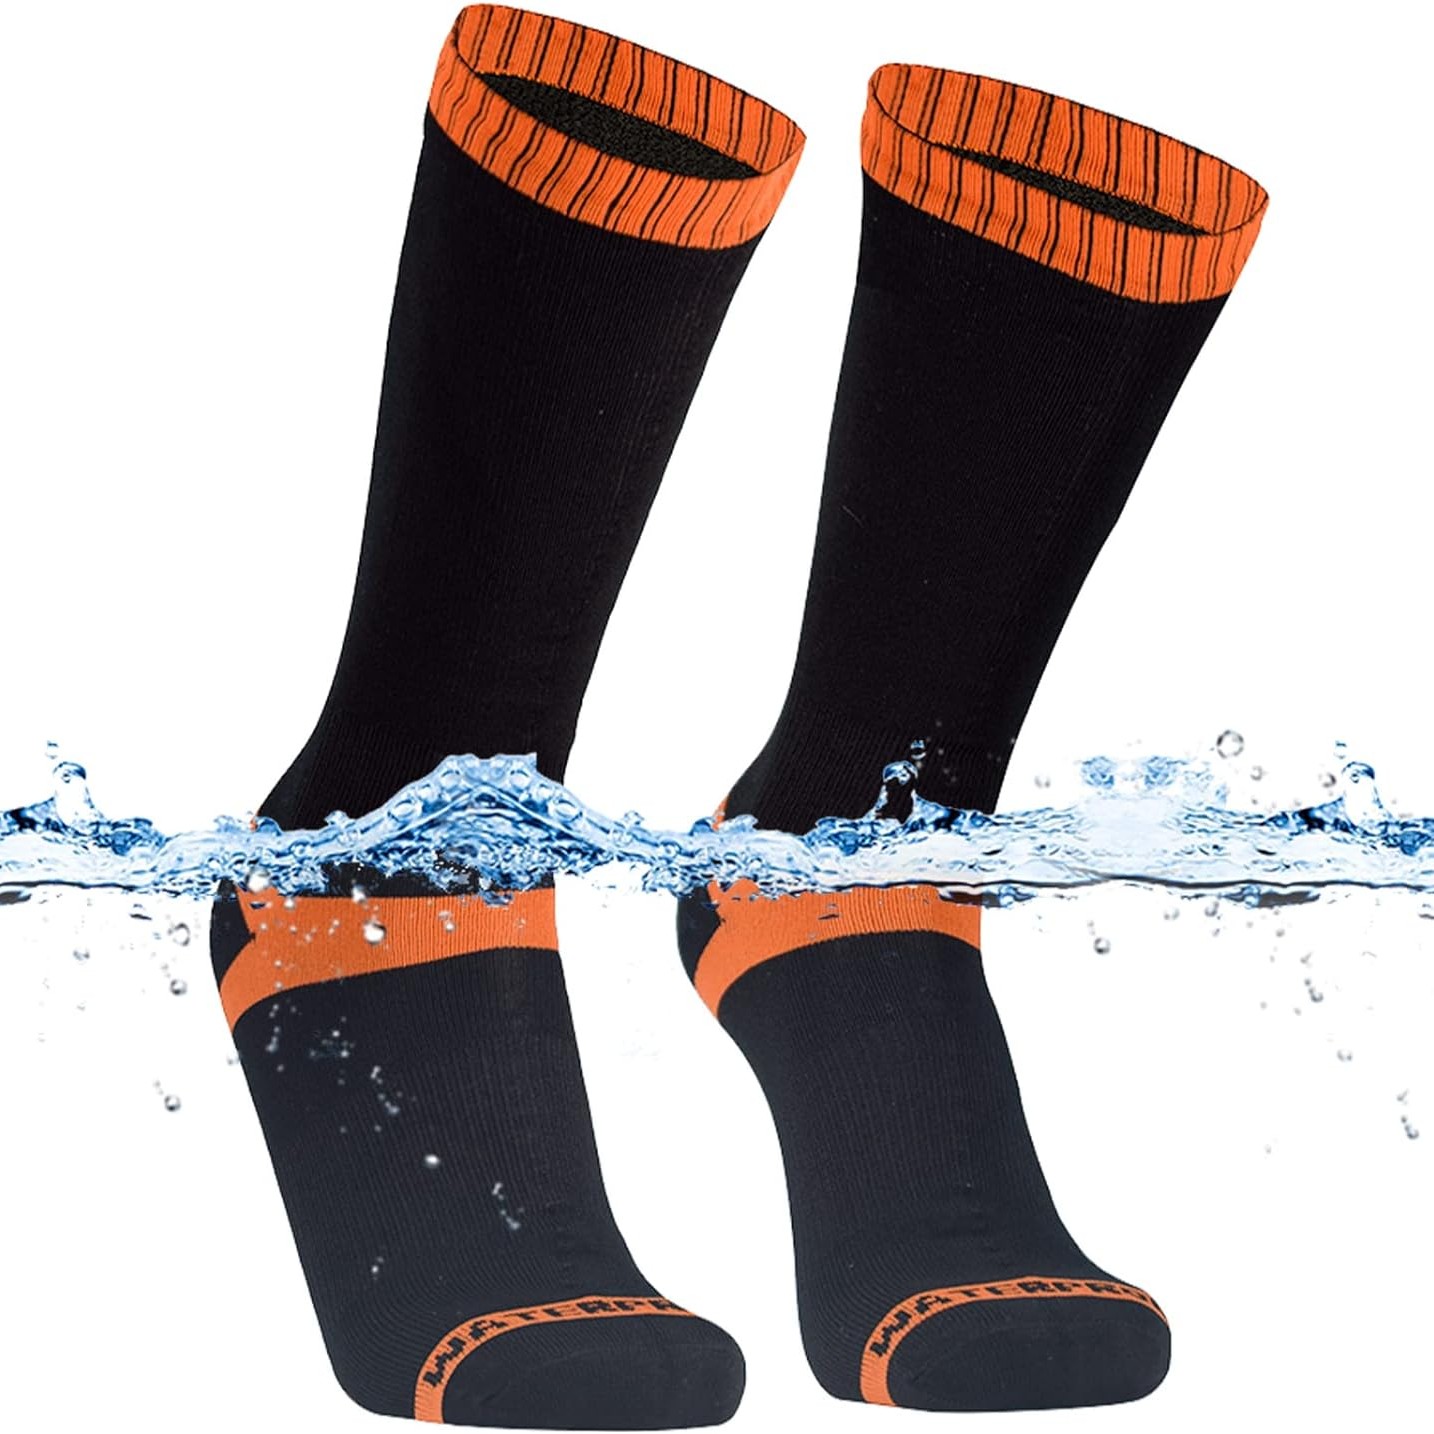 DexShell Hytherm Pro Waterproof Merino Wool Socks